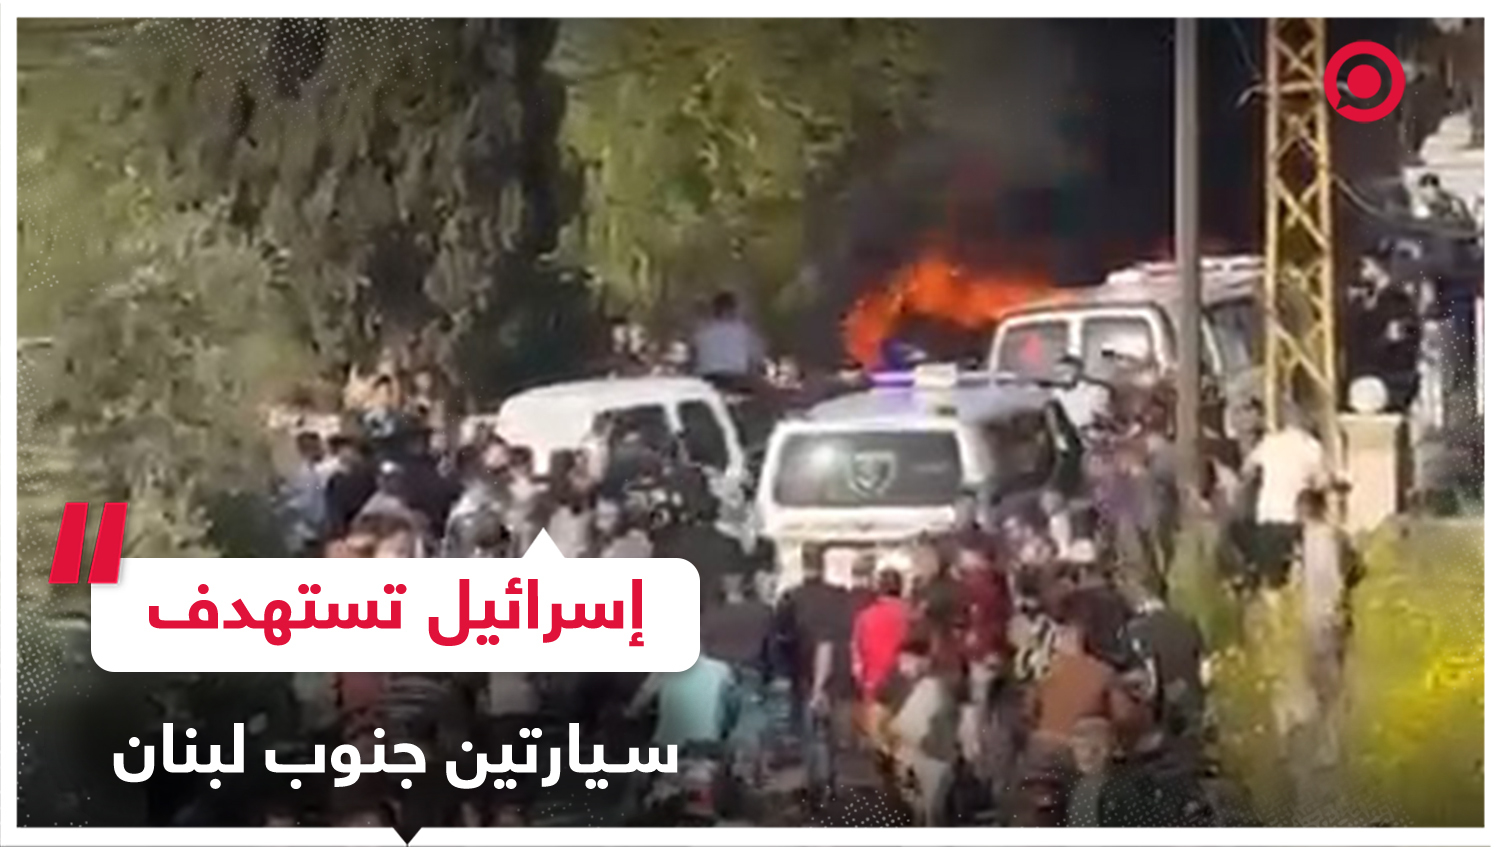 مسيرة إسرائيلية تستهدف سيارتين في بلدة الشهابية بالجنوب اللبناني